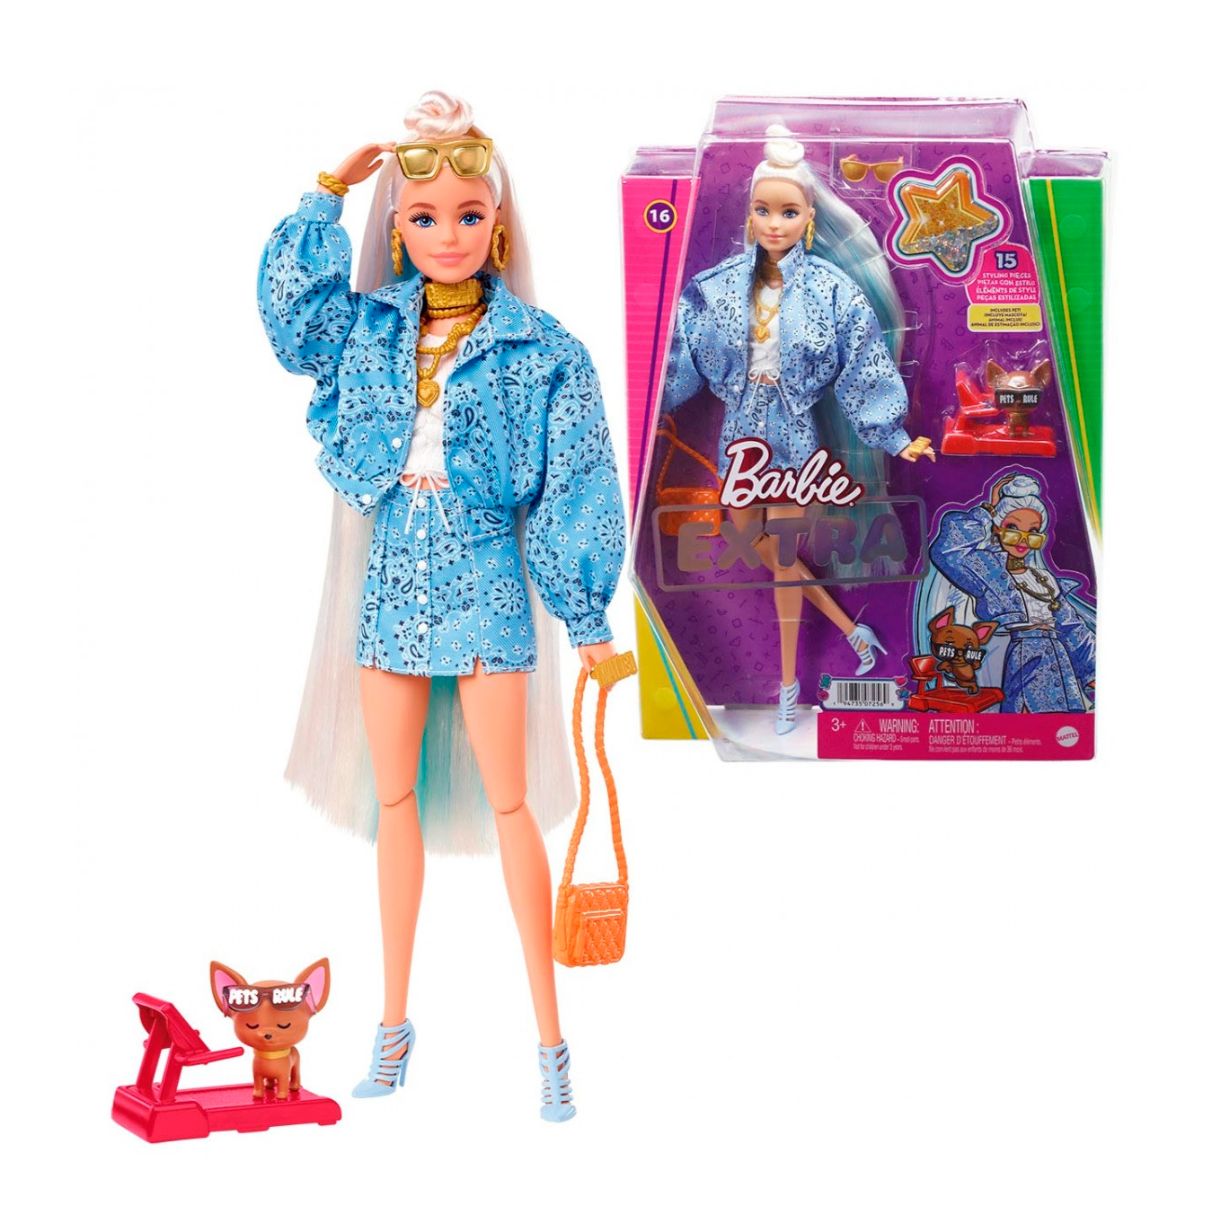 barbie extra conjunto estampado bandana muñeca rubia articulada con accesorios de moda y mascota, juguete +3 años (mattel hhn08)